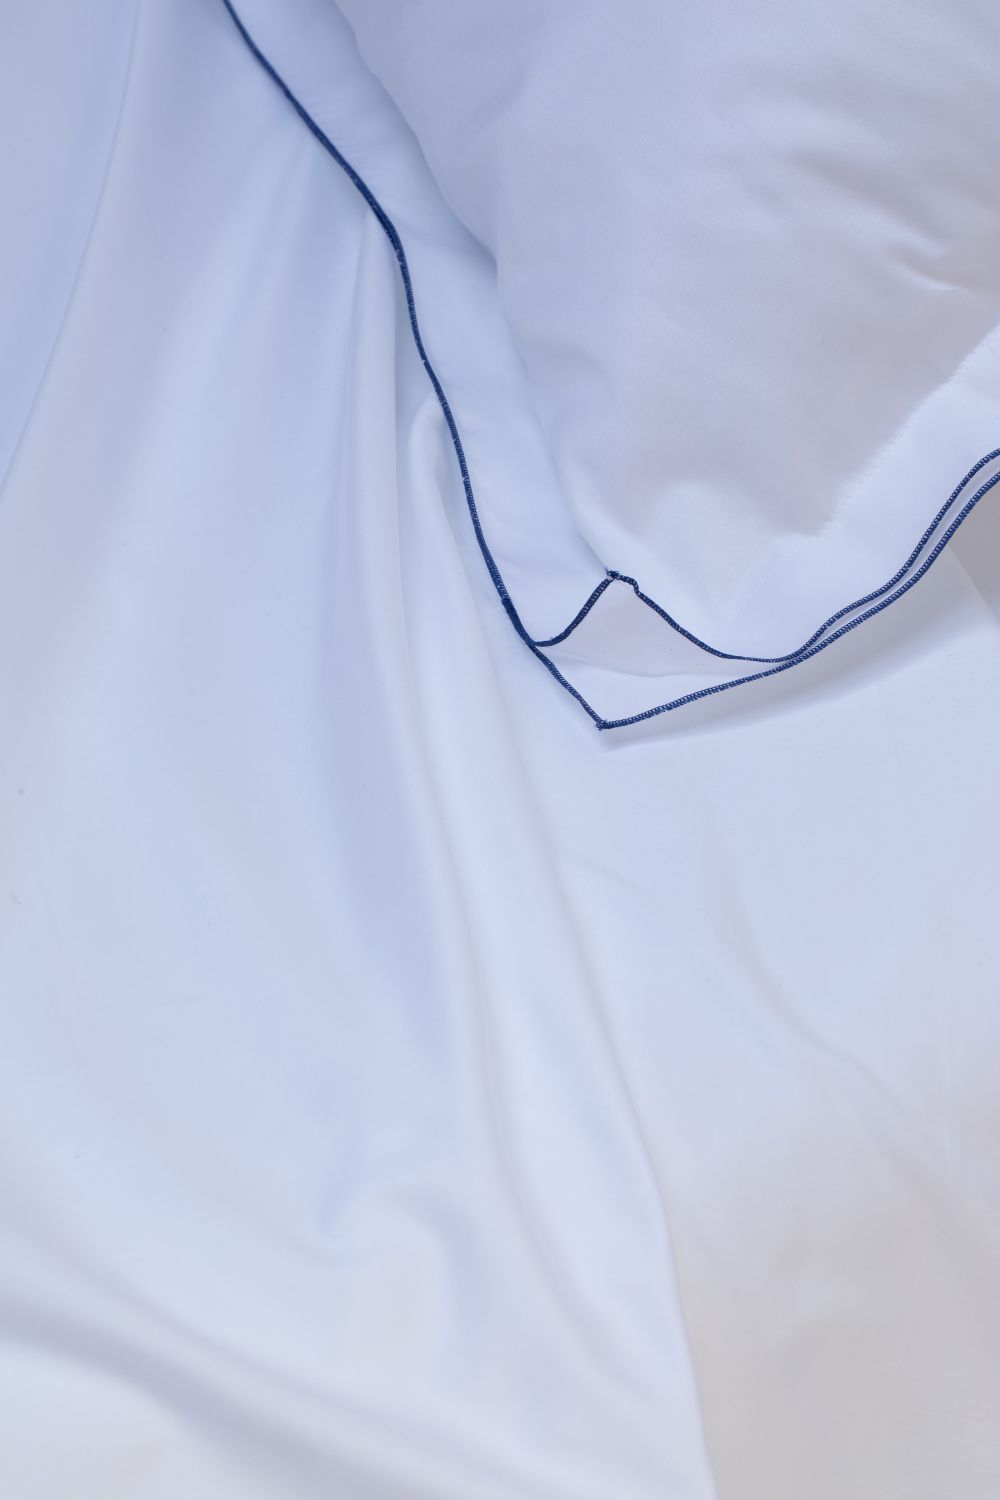 LUCINA - Lenzuolo sopra in raso di puro cotone rifinito con cordonetto-filo colorato